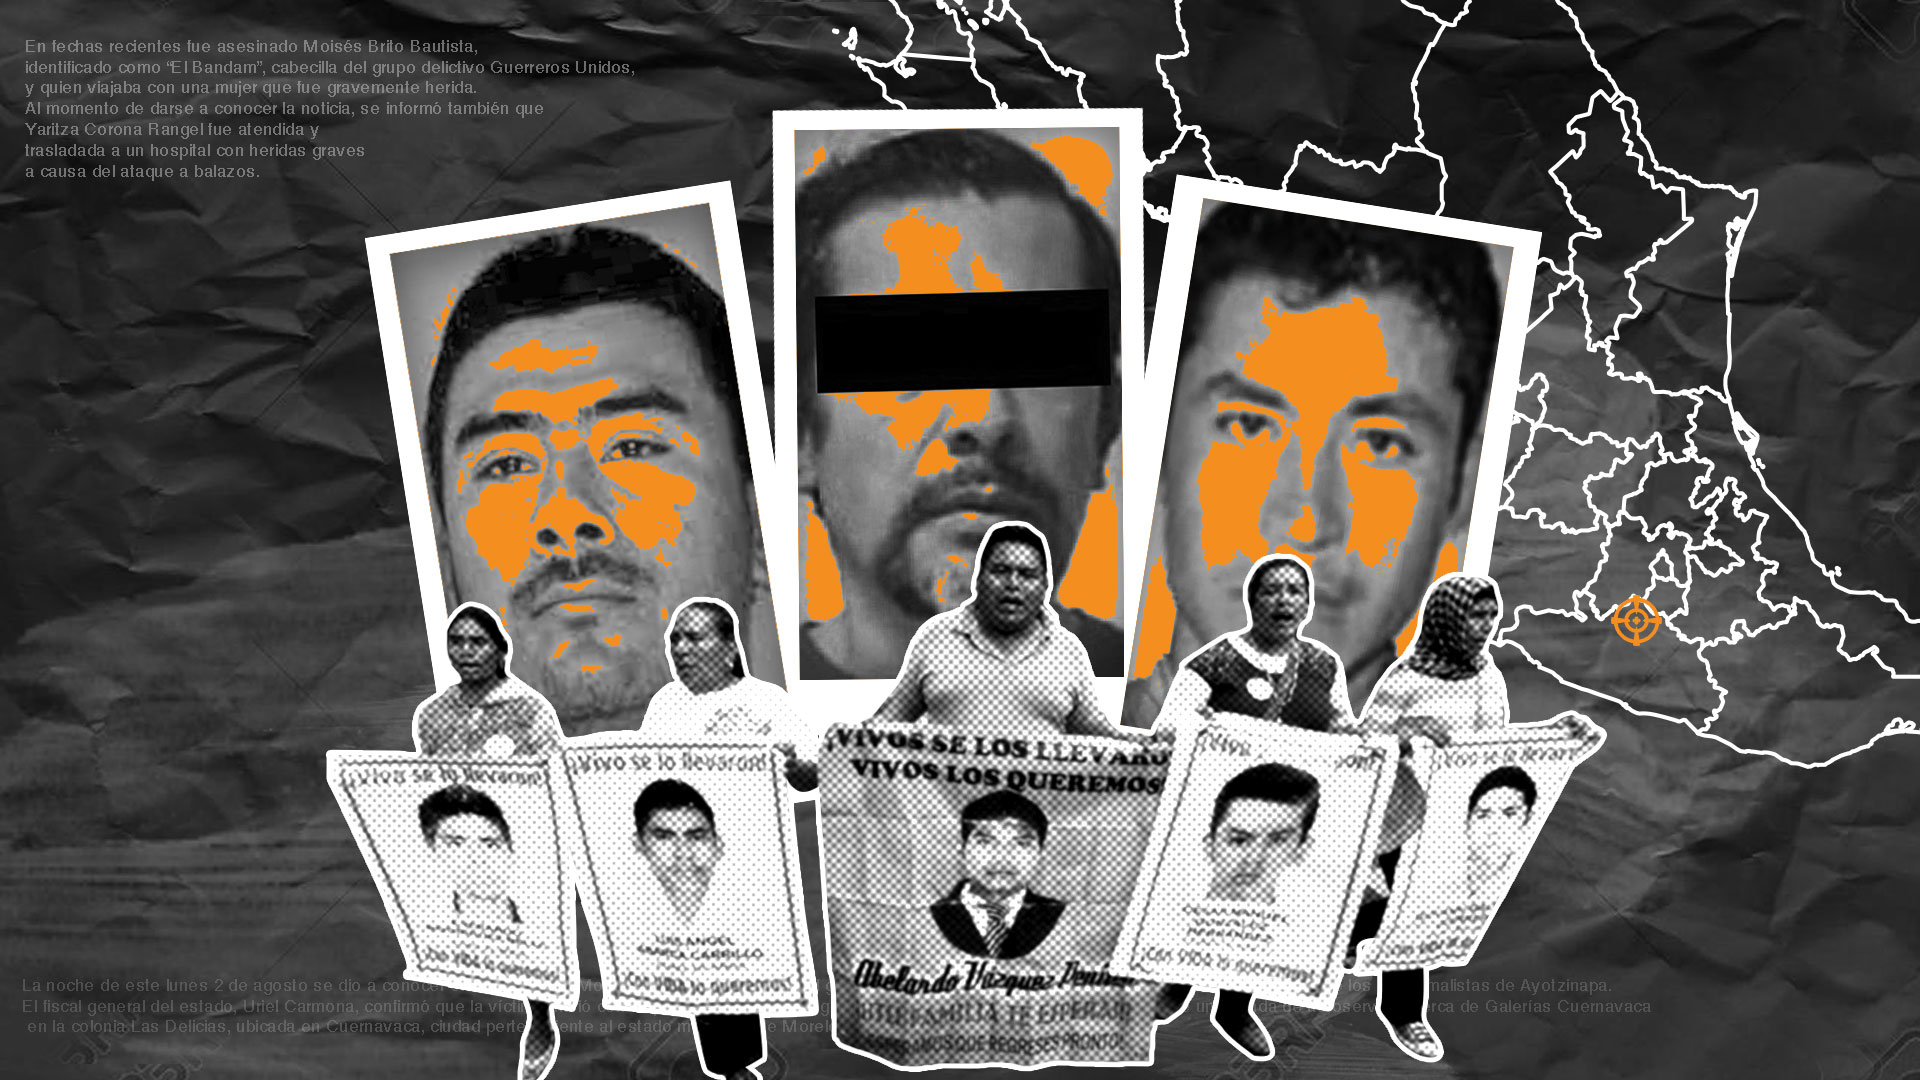 Guerreros Unidos: ocaso del infame cártel y el inicio de un nuevo infierno  en México - Infobae